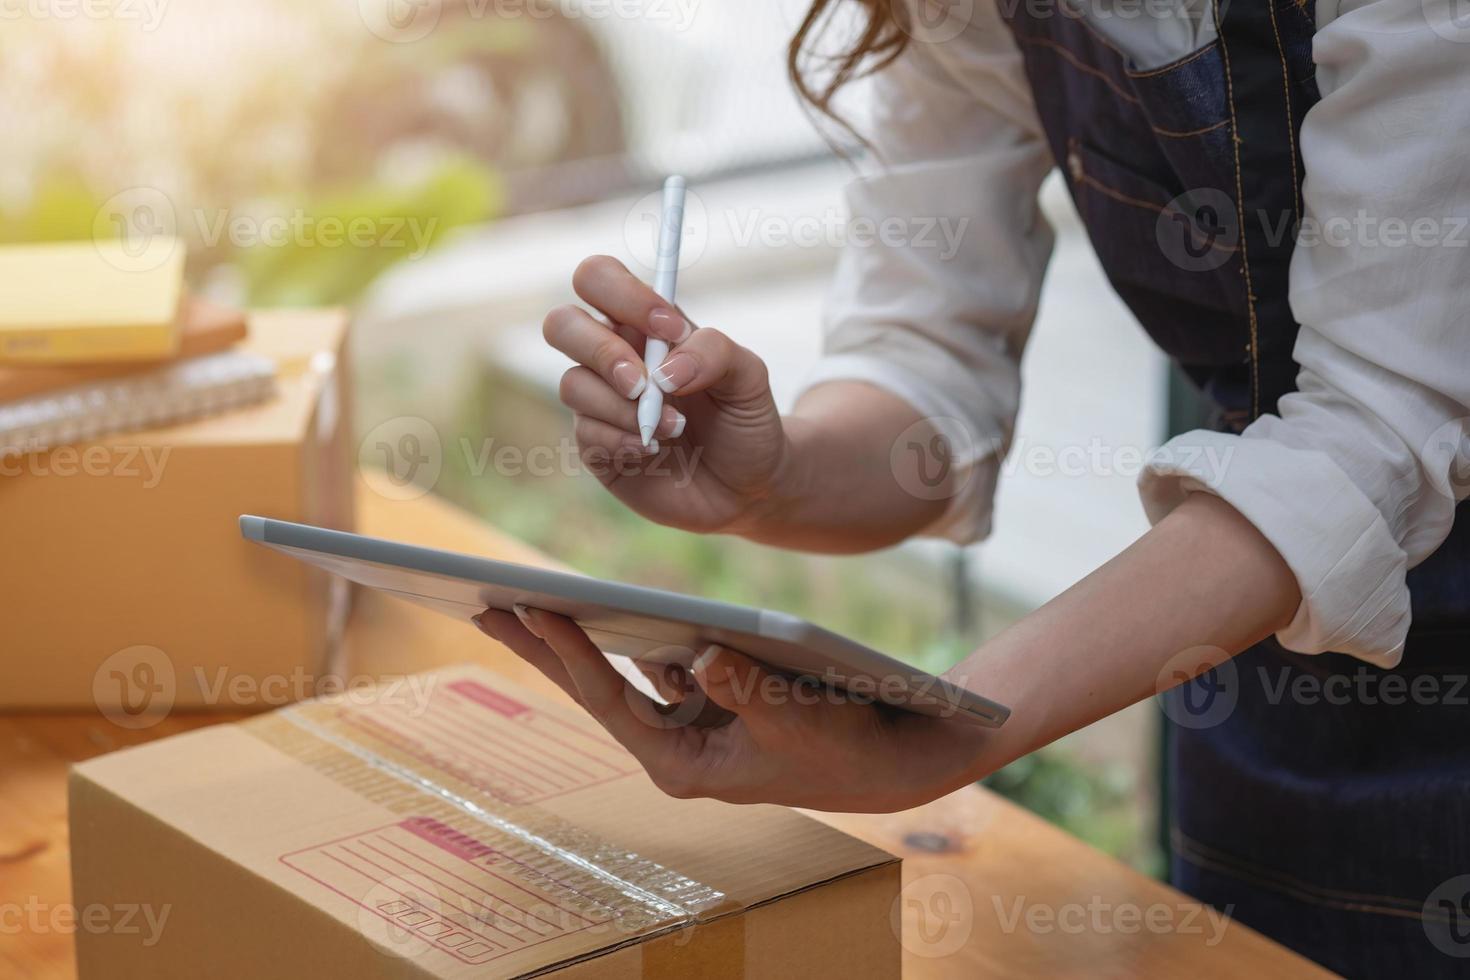 La propietaria de una empresa de ventas en línea recibe pedidos y entrega productos con cajas a los clientes. concepto de negocio de pymes en línea. foto